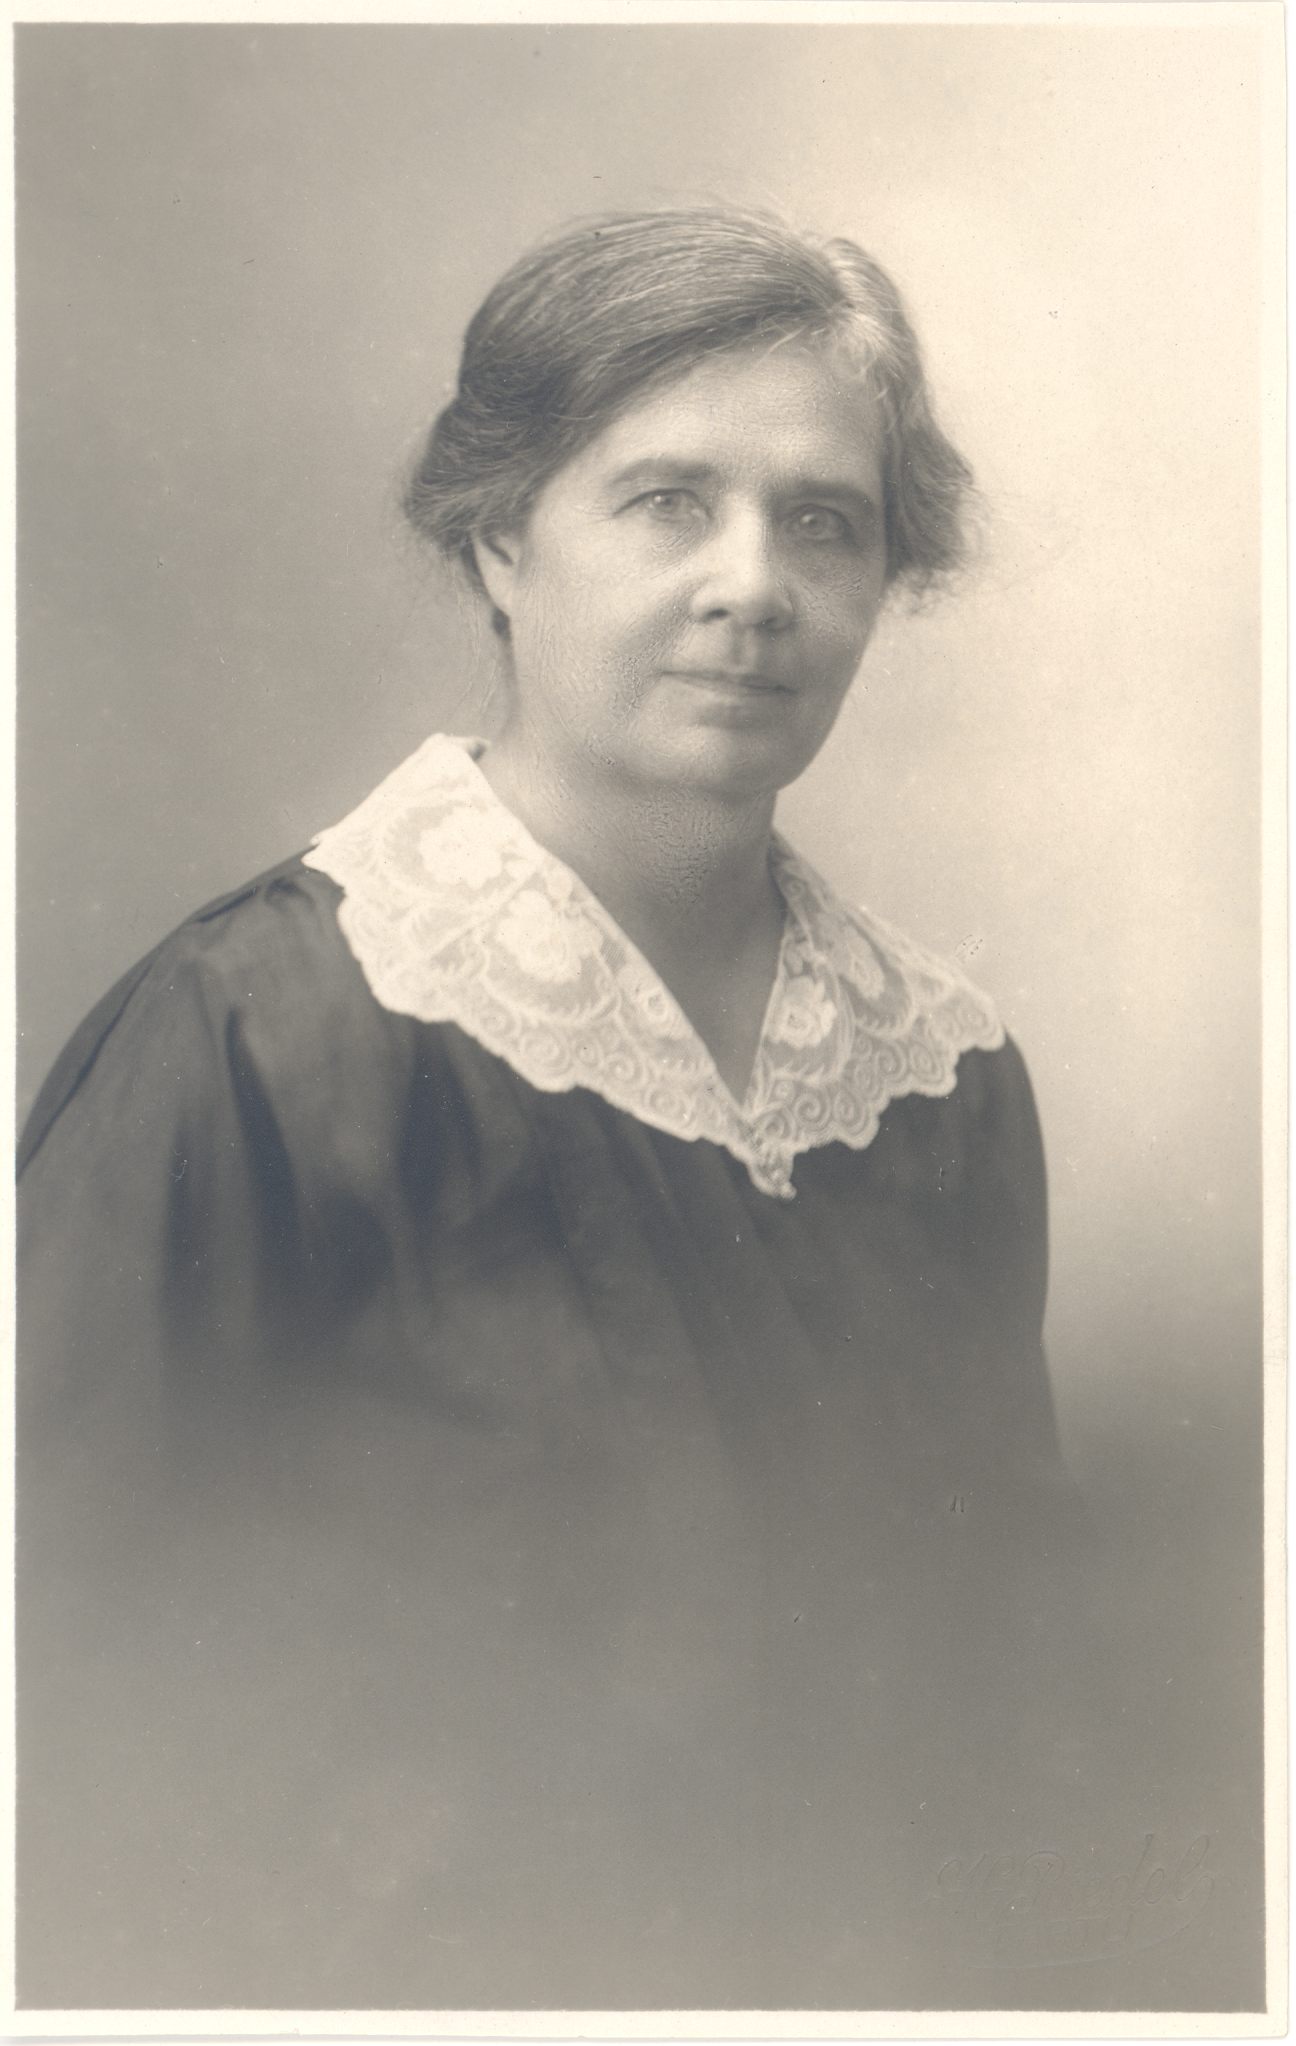 Wound, Anna (1864-1957), writer